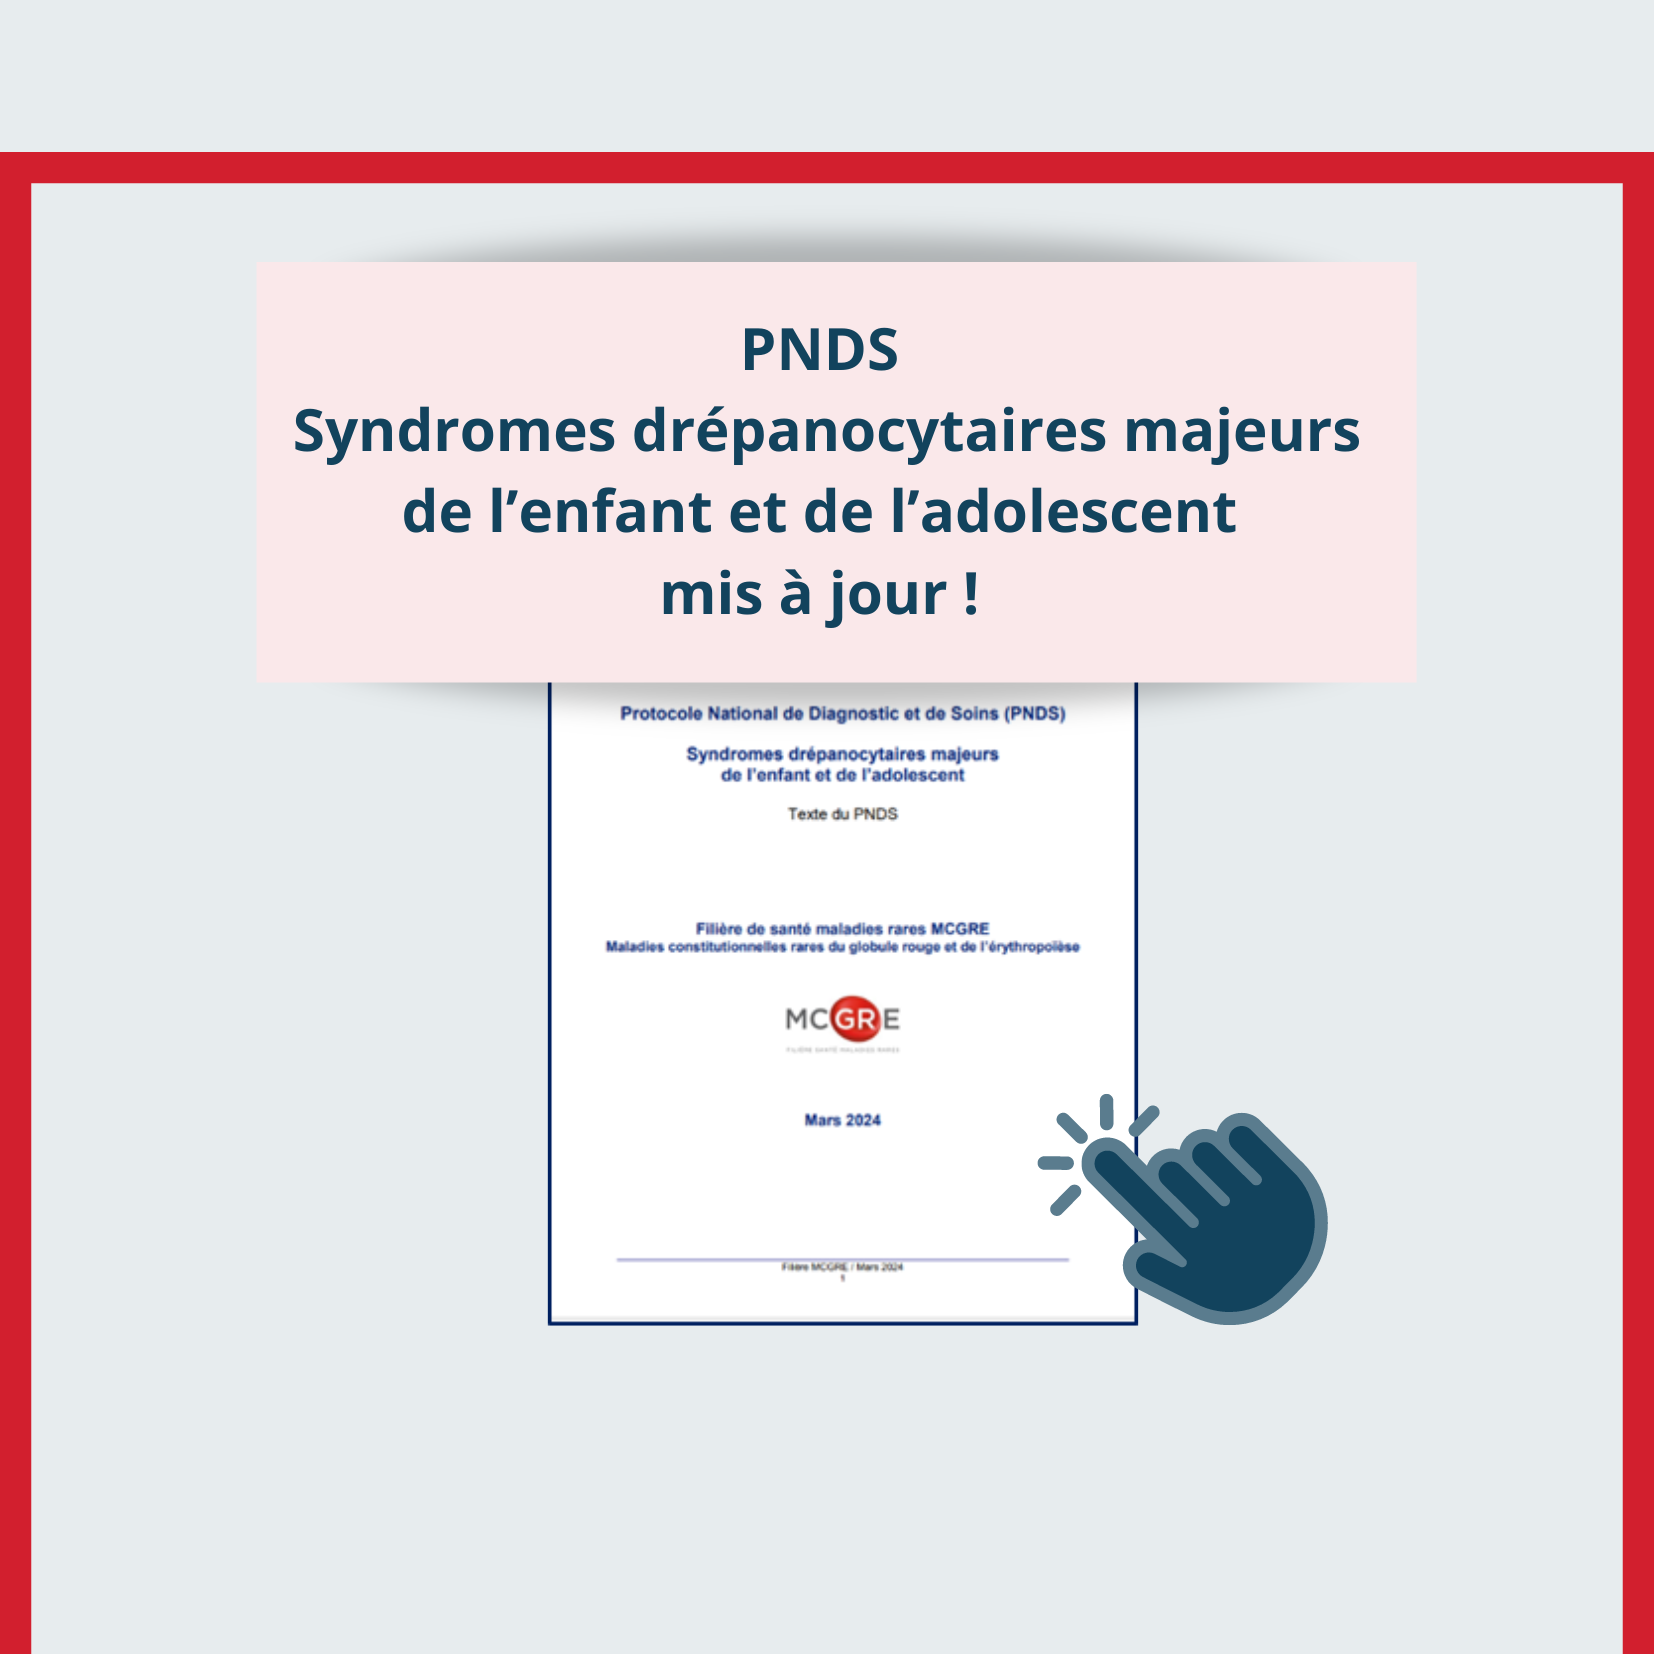 PNDS Syndromes drépanocytaires majeurs de l’enfant et de l’adolescent - Mars 2024